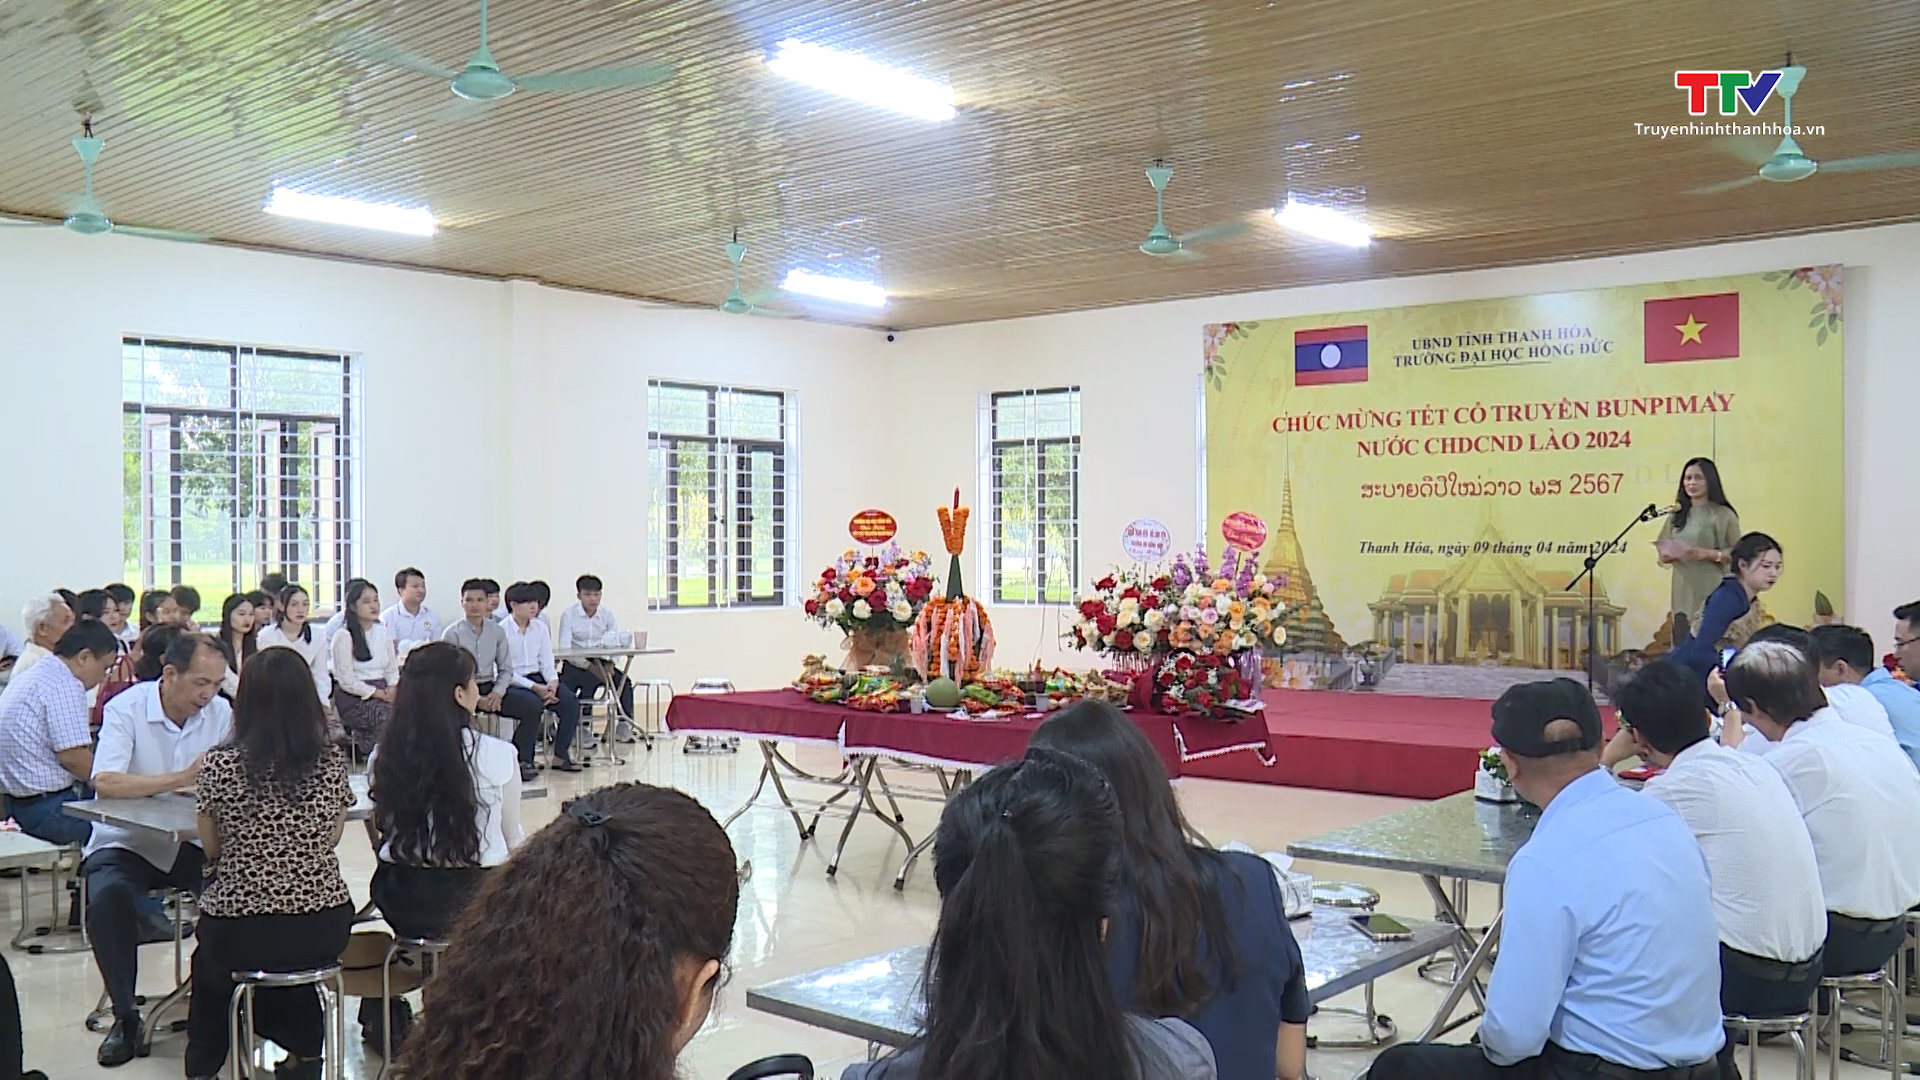 Trường Đại học Hồng Đức tổ chức Tết Bunpimay cho lưu học sinh Lào- Ảnh 1.